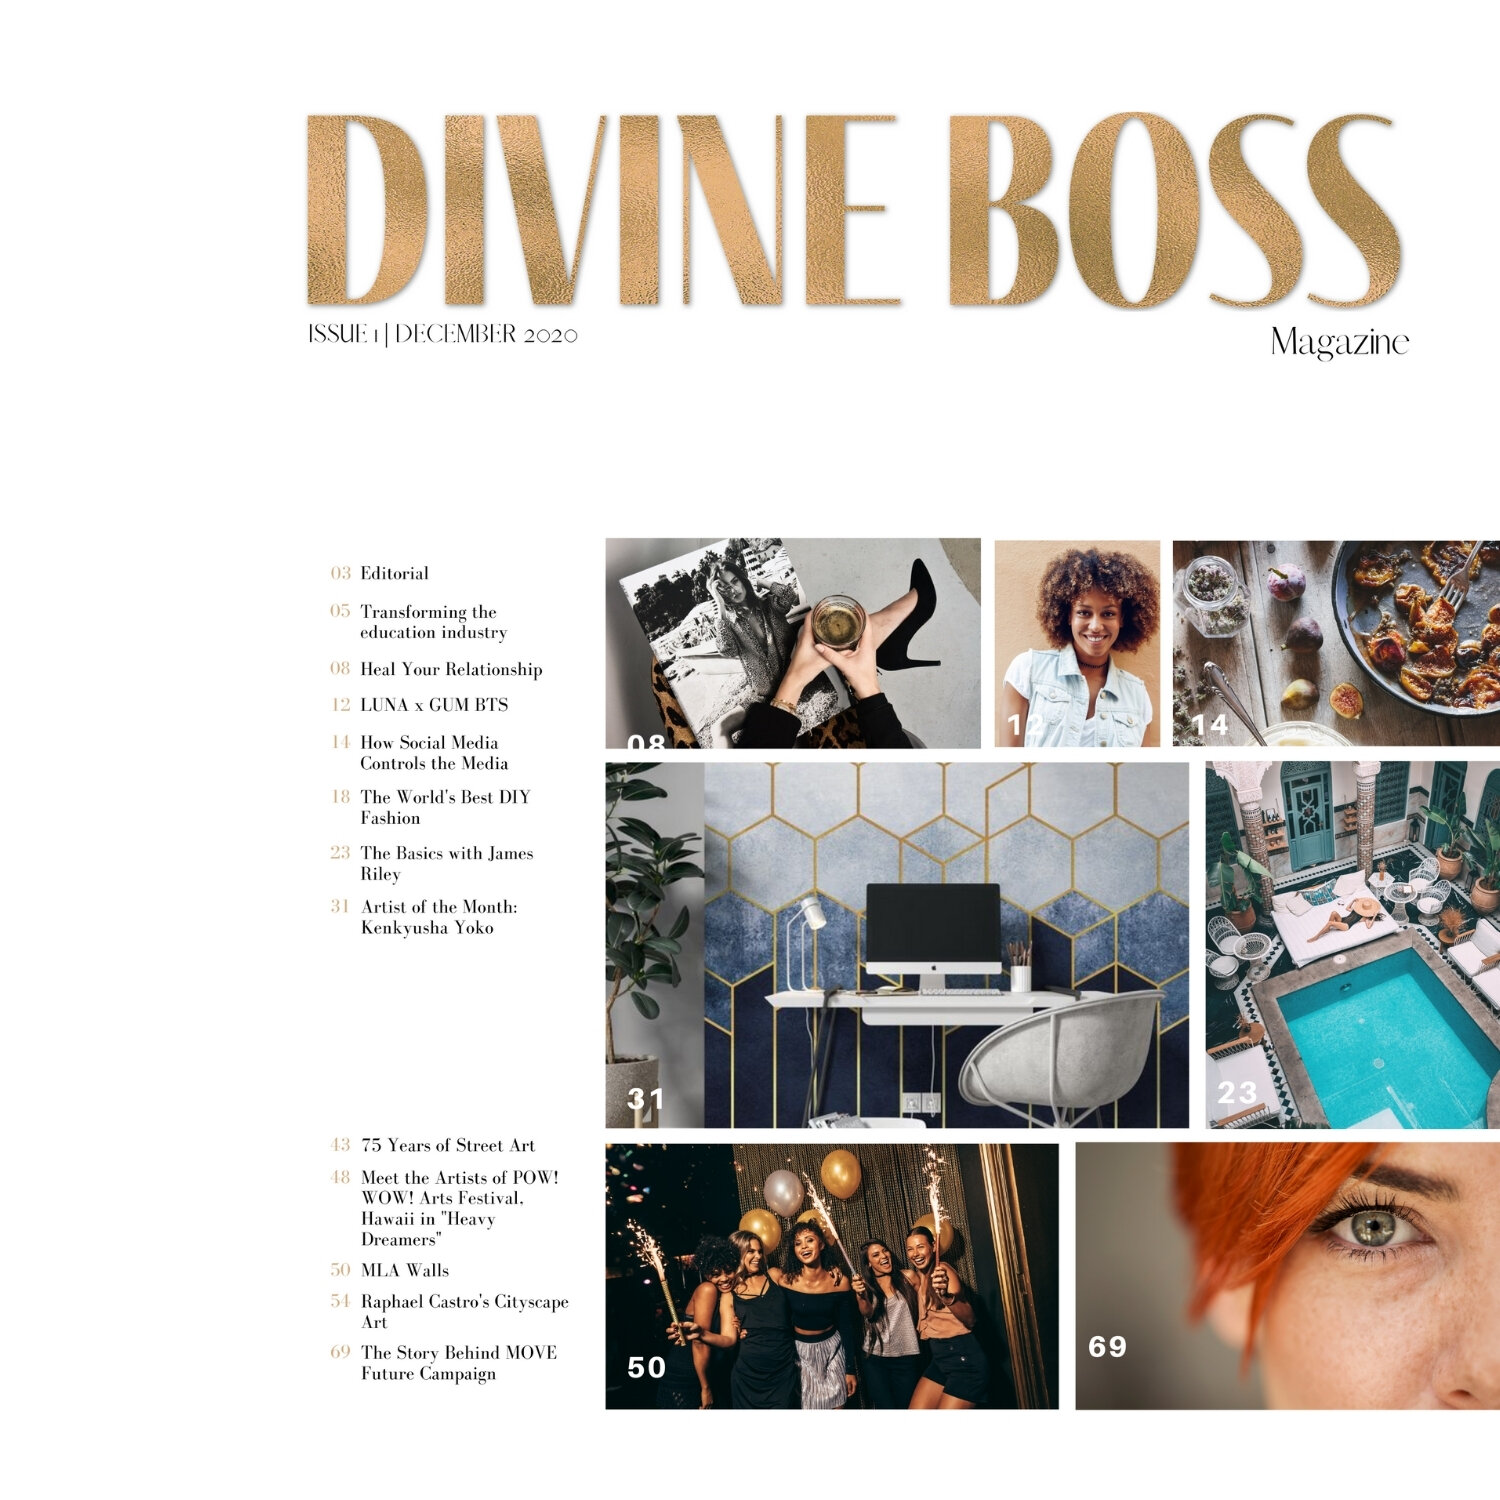 Divine Boss Website Images.jpg